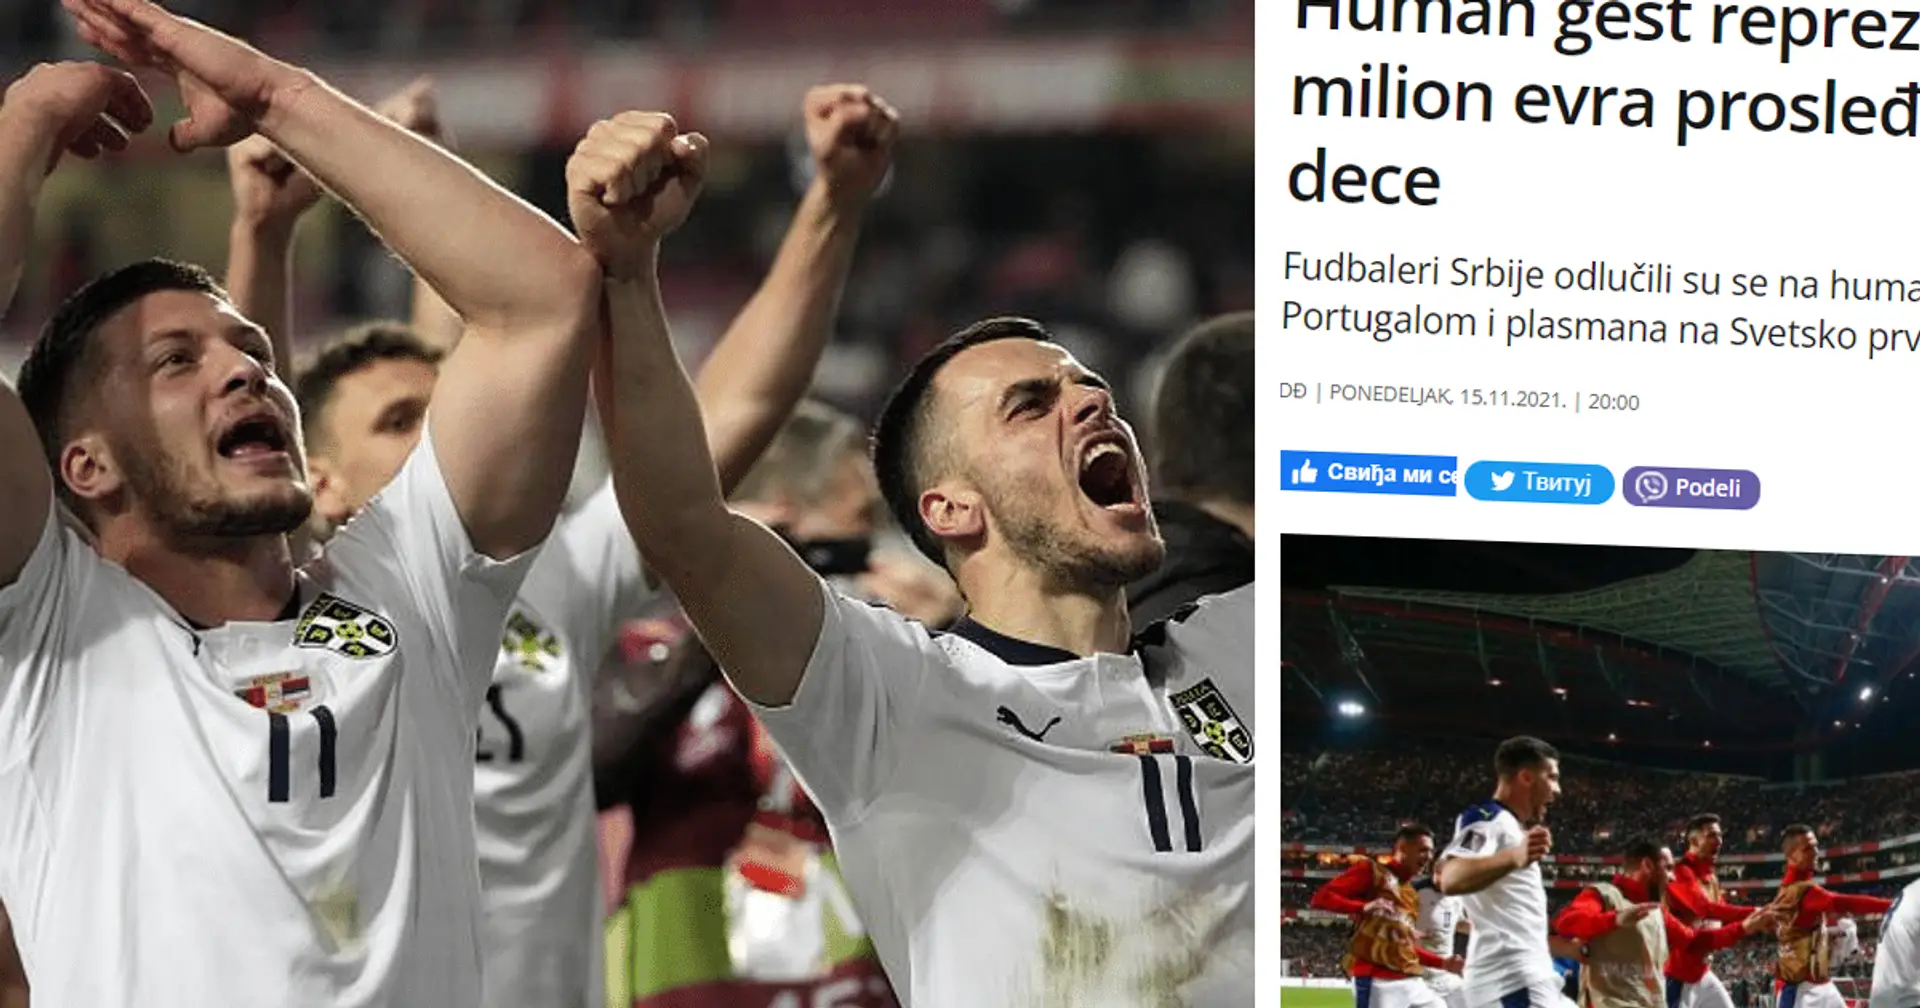 Serbisches Nationalteam bekommt 1 Mio. Euro für die WM-Qualifikation - Spieler spenden Geld für Kinder